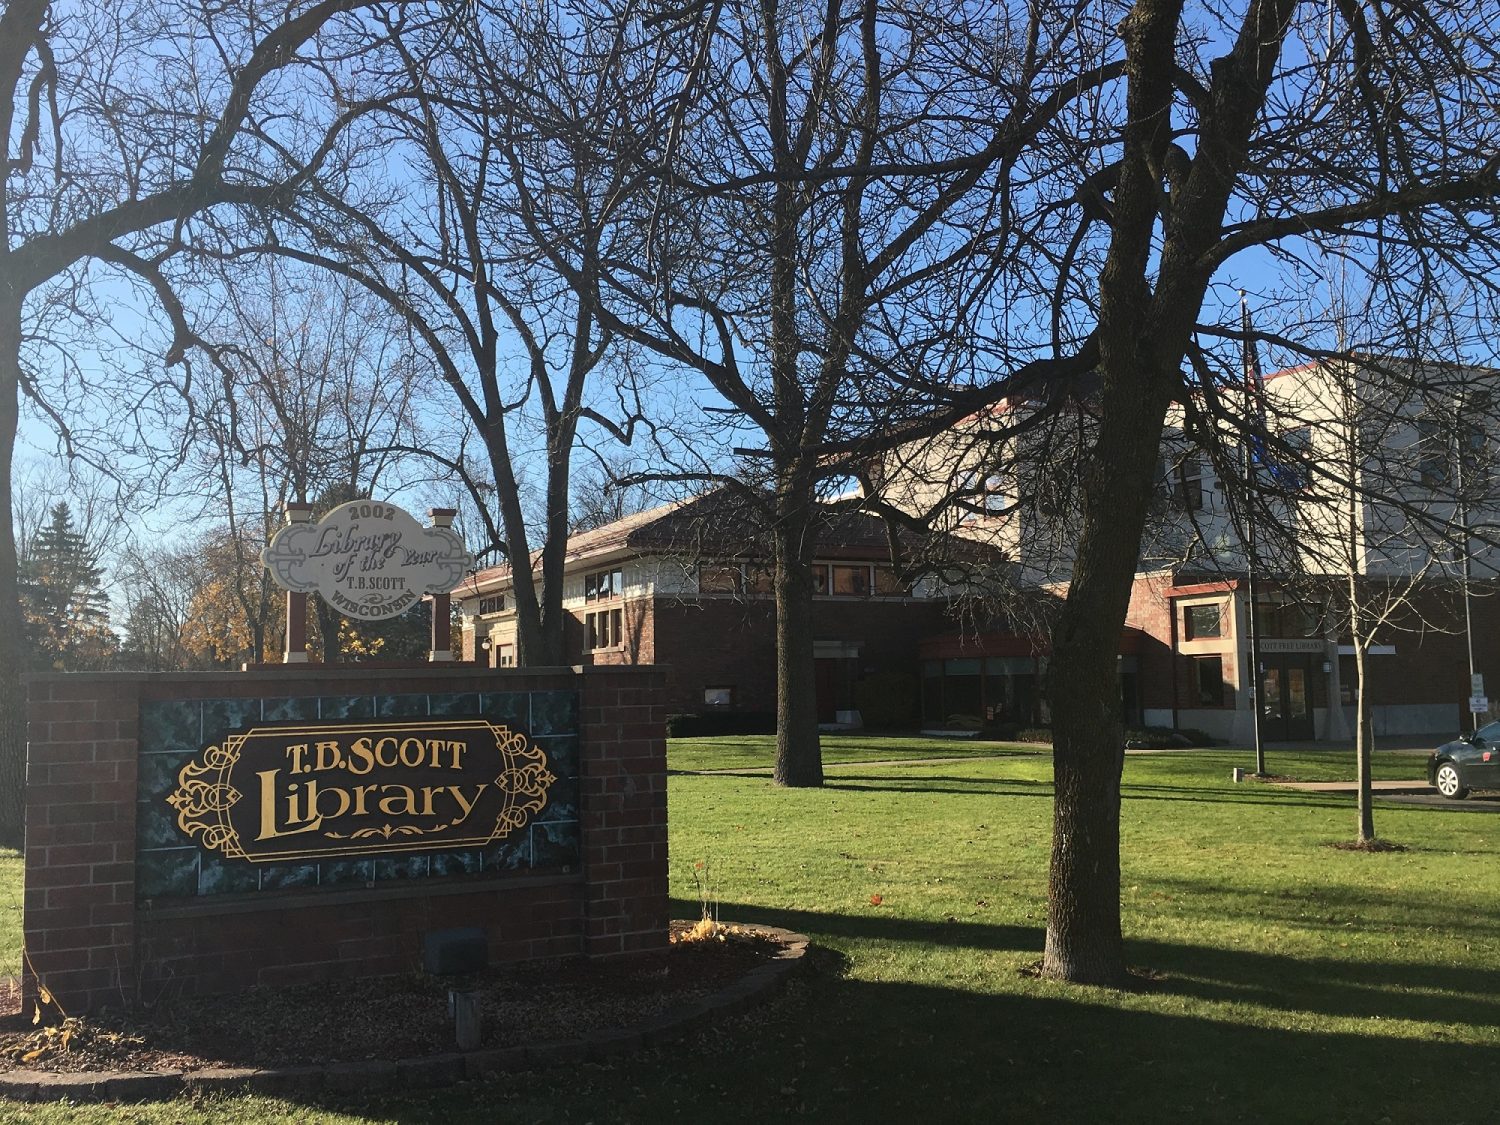 Tail Waggin’ Tutors returns to T.B. Scott Library